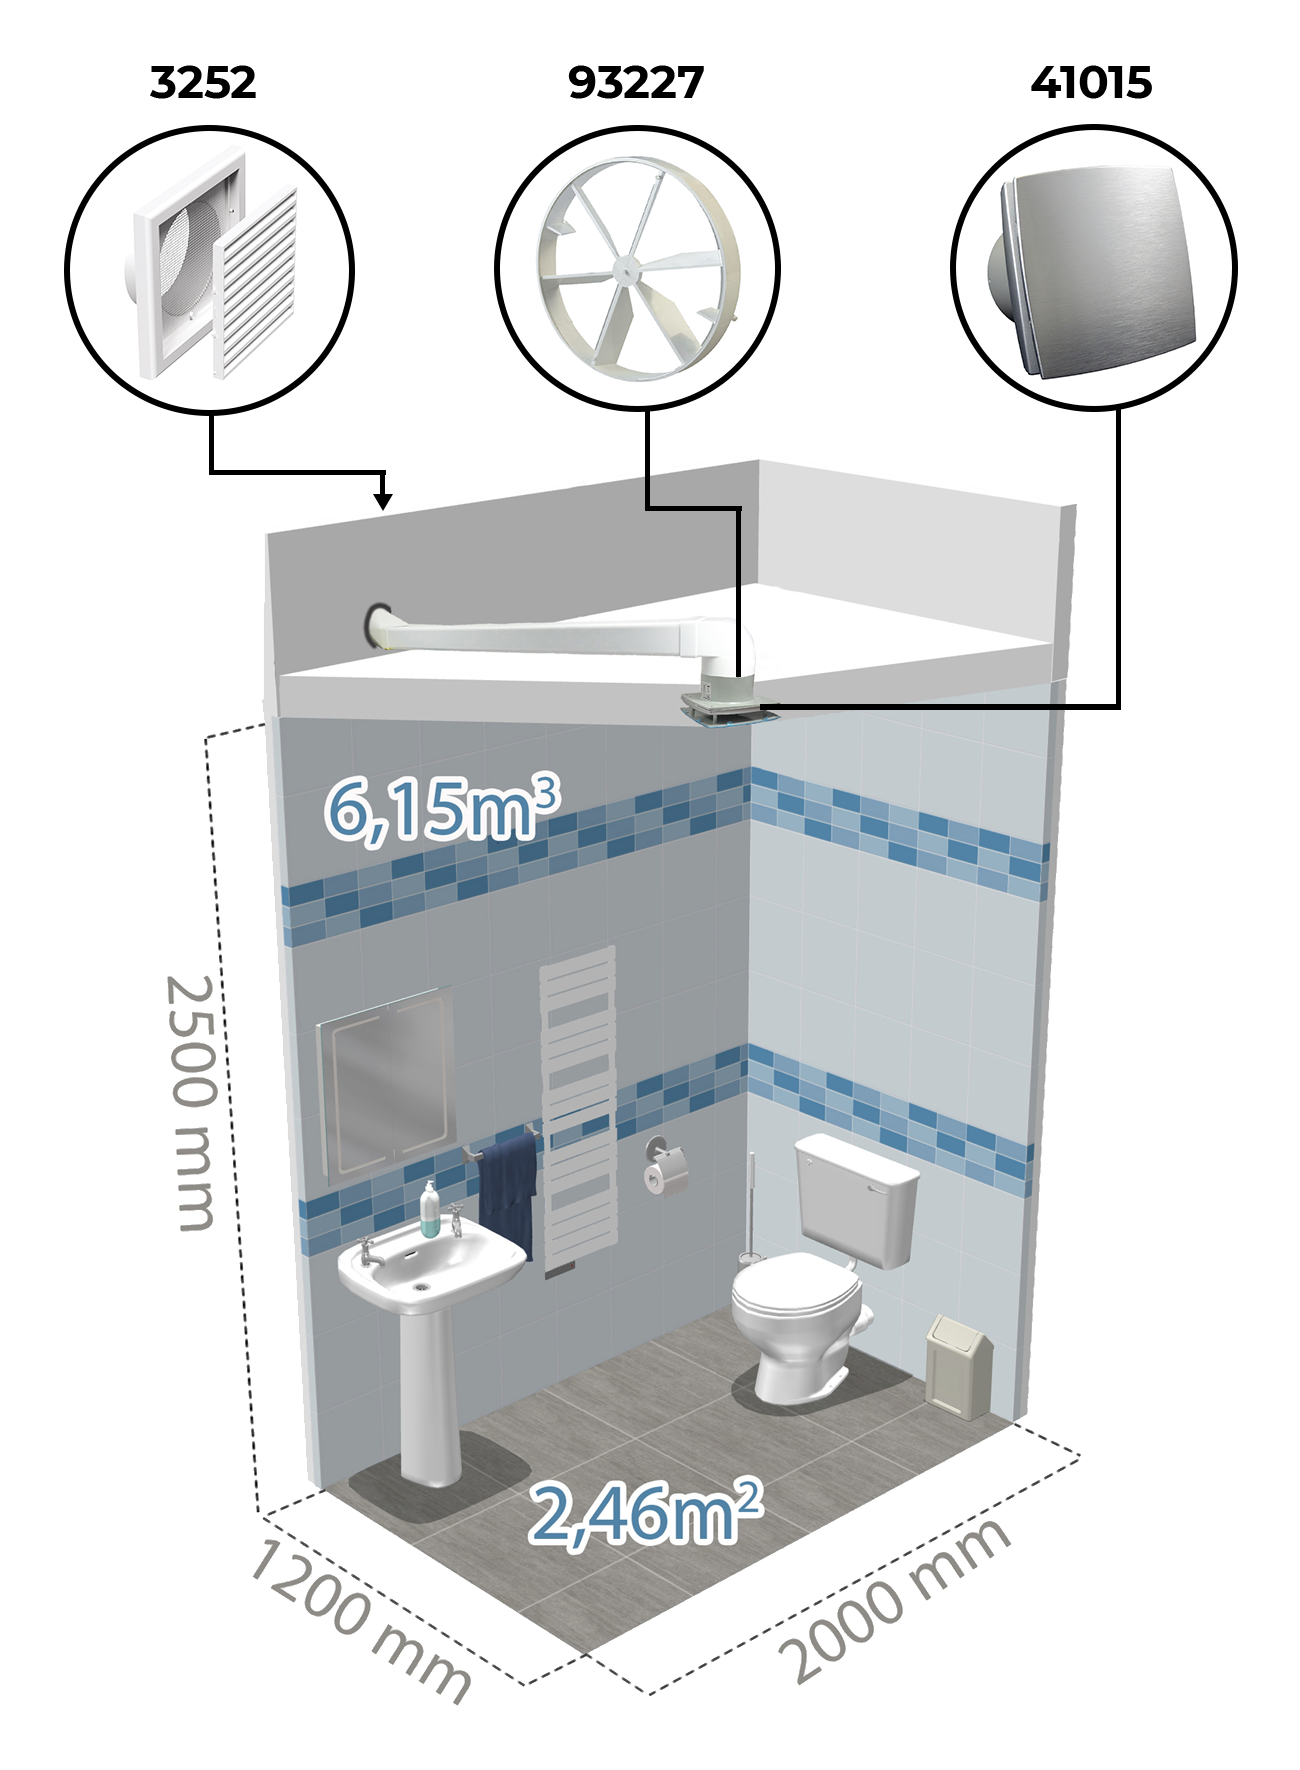 Príklad inštalácie vzduchotechniky na toalete pomocou kúpeľňového ventilátora Dalap BF